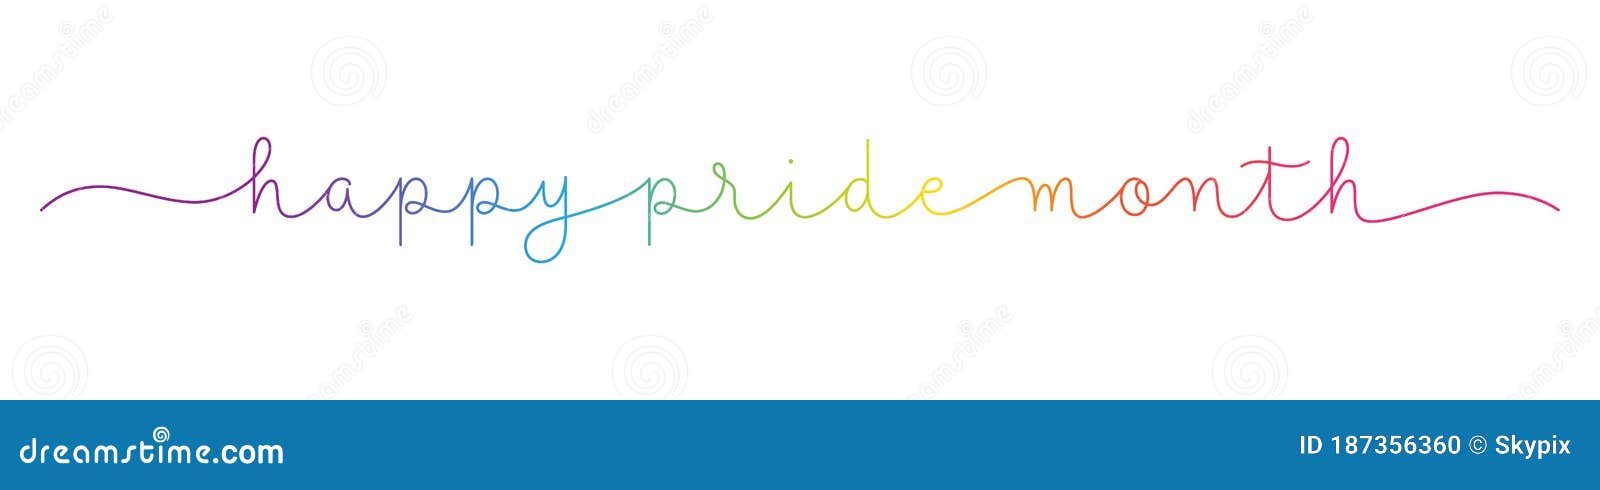 happy pride month rainbow monoline calligraphy banner